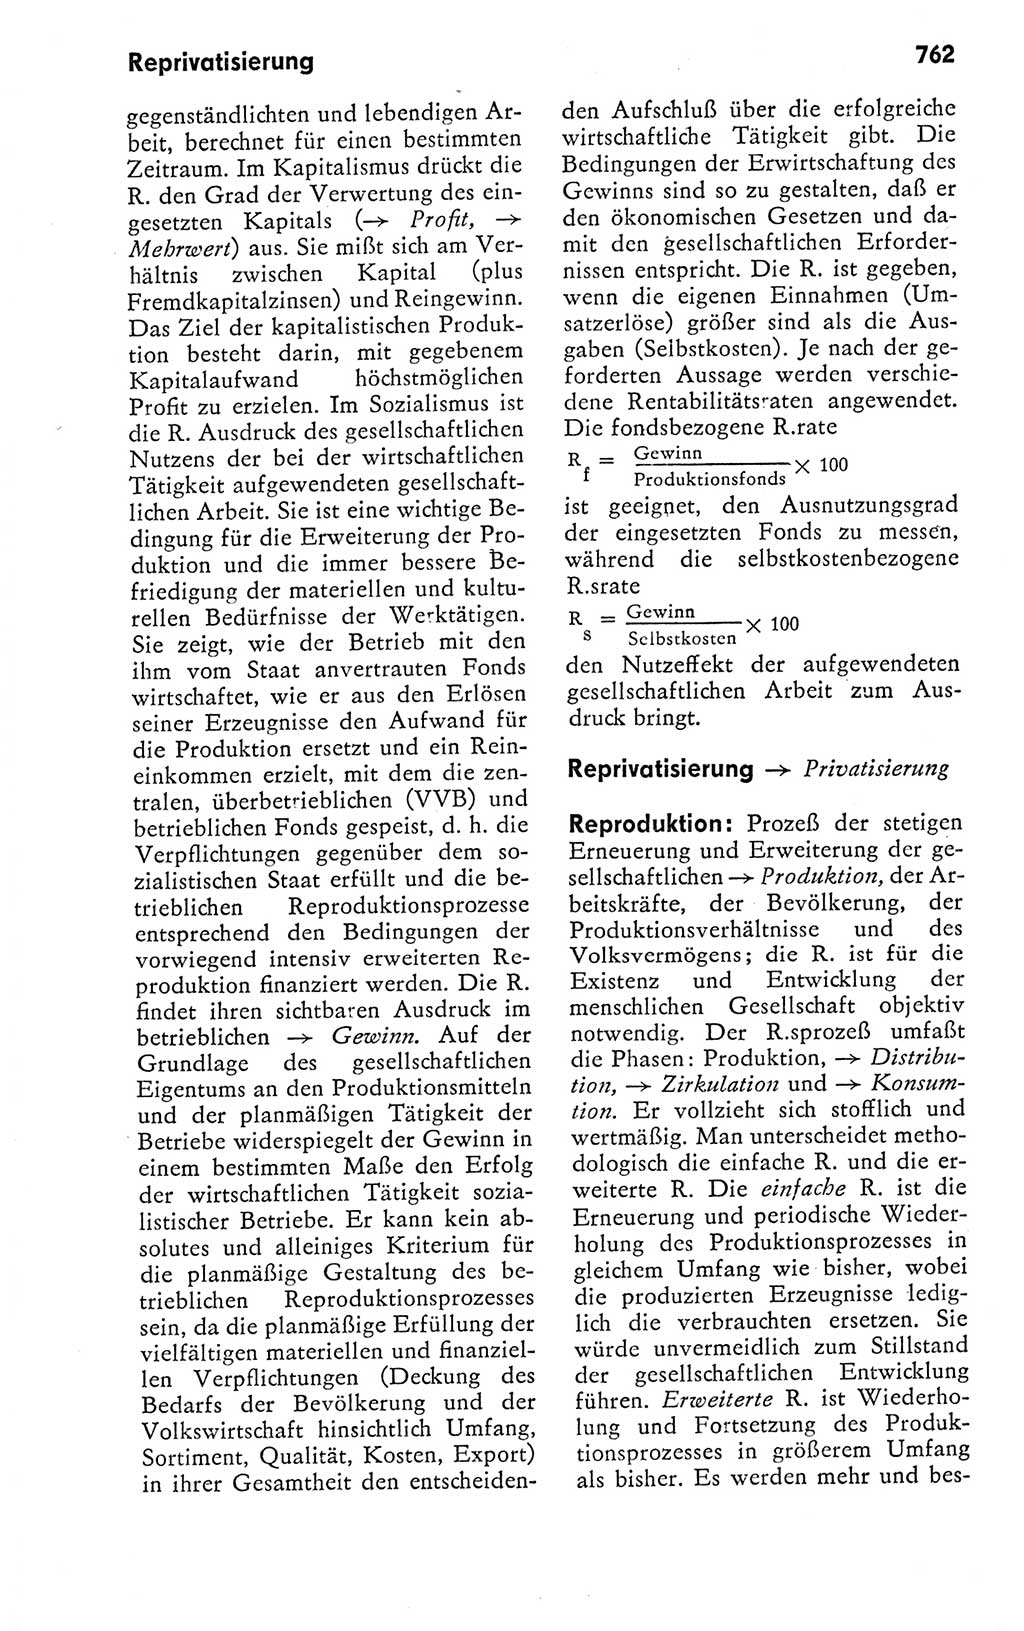 Kleines politisches Wörterbuch [Deutsche Demokratische Republik (DDR)] 1978, Seite 762 (Kl. pol. Wb. DDR 1978, S. 762)